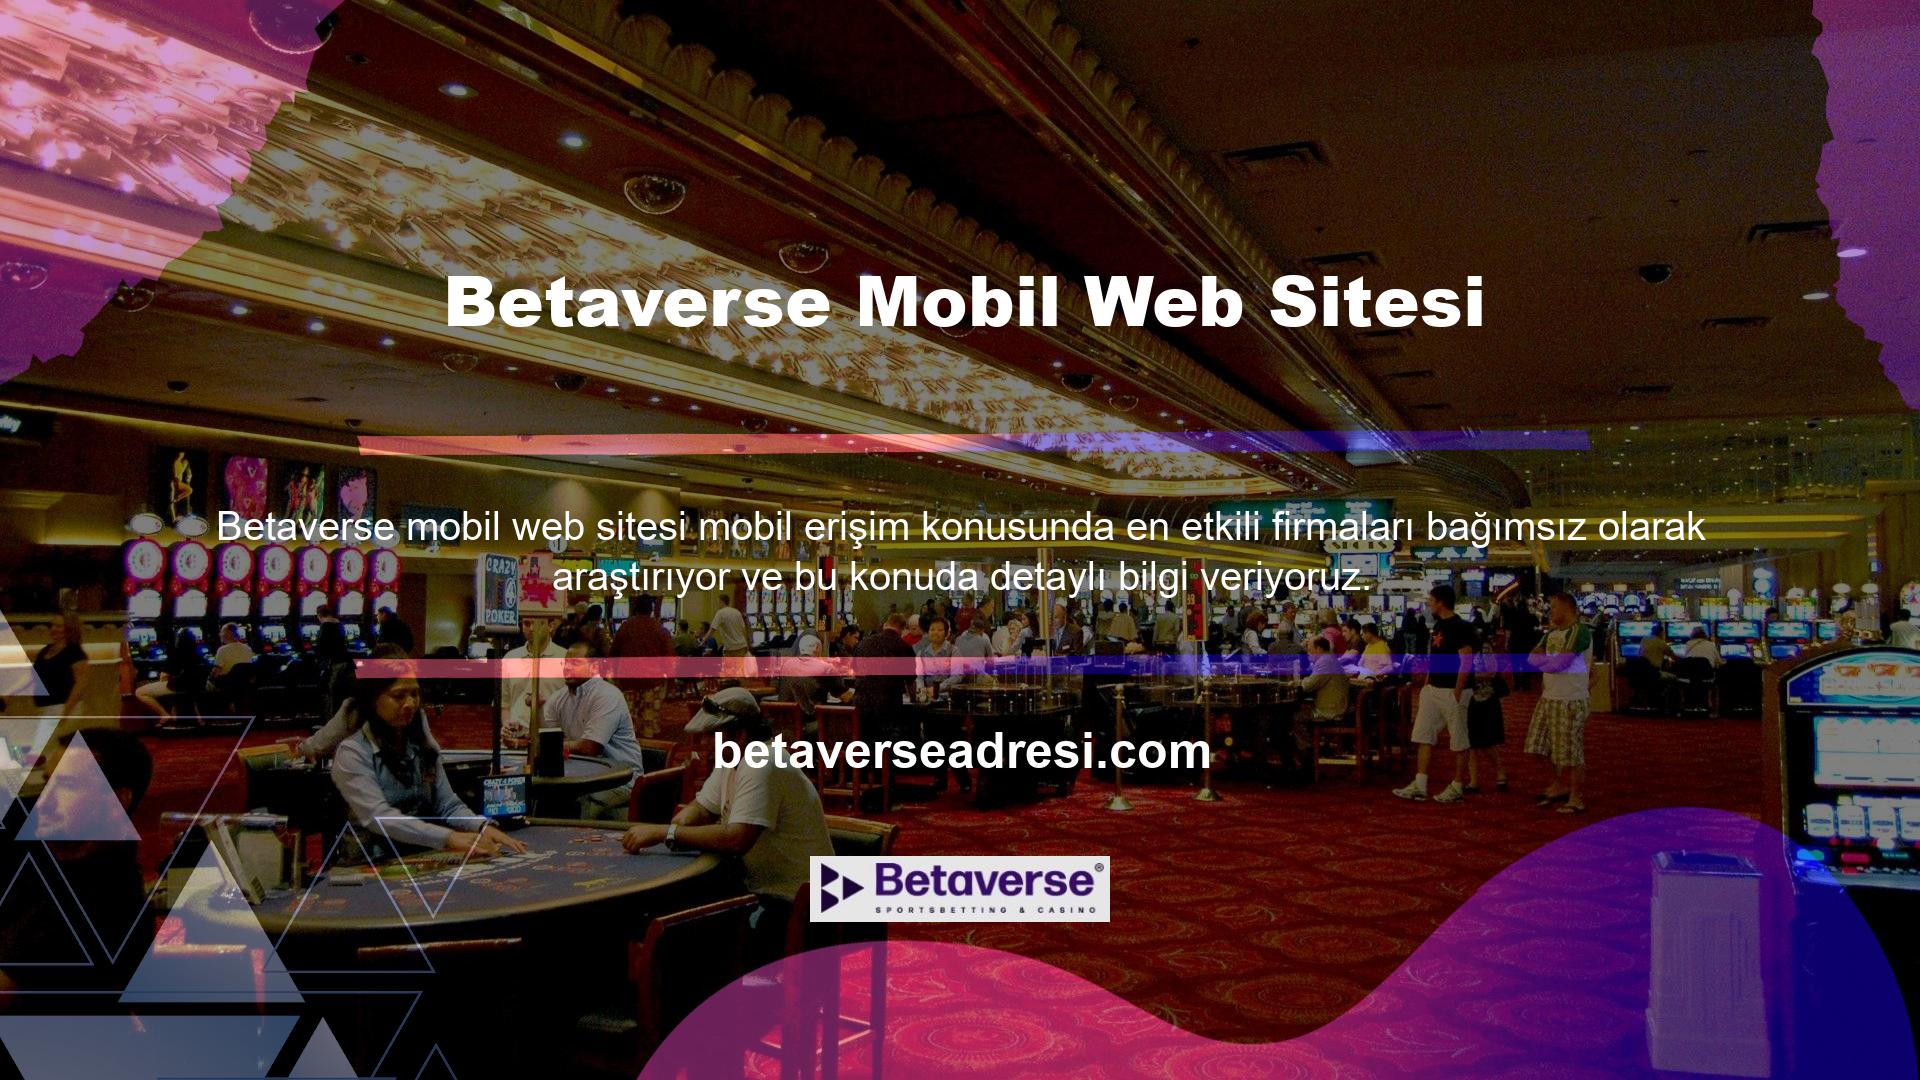 Betaverse mobil sitesini sizler için inceledik